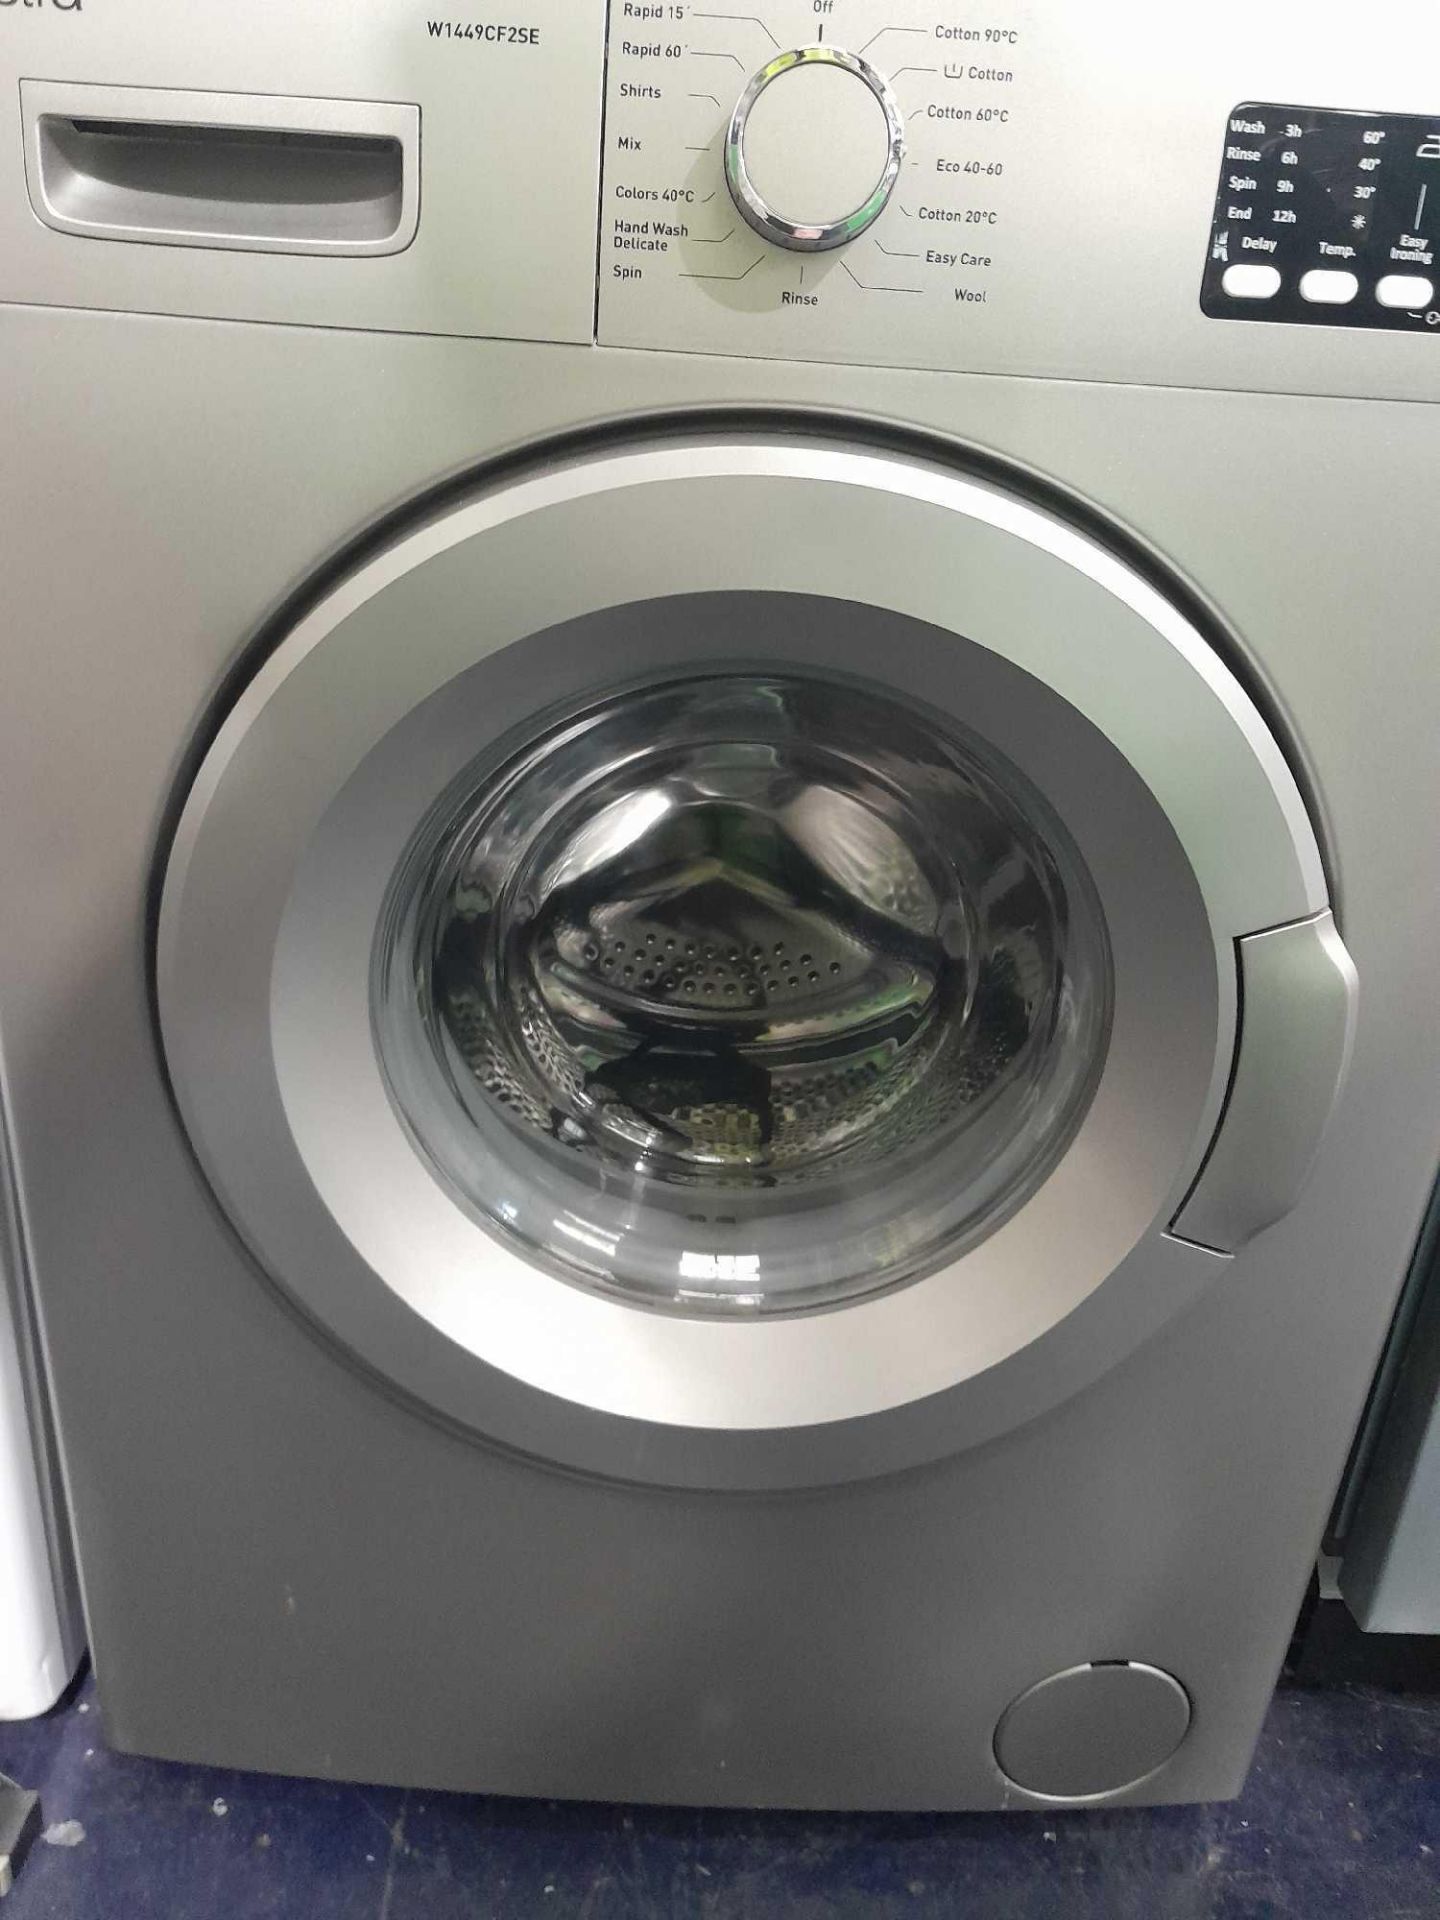 RRP £350 Electra W1449Cf2Se Grey Washing Machine - Image 2 of 2